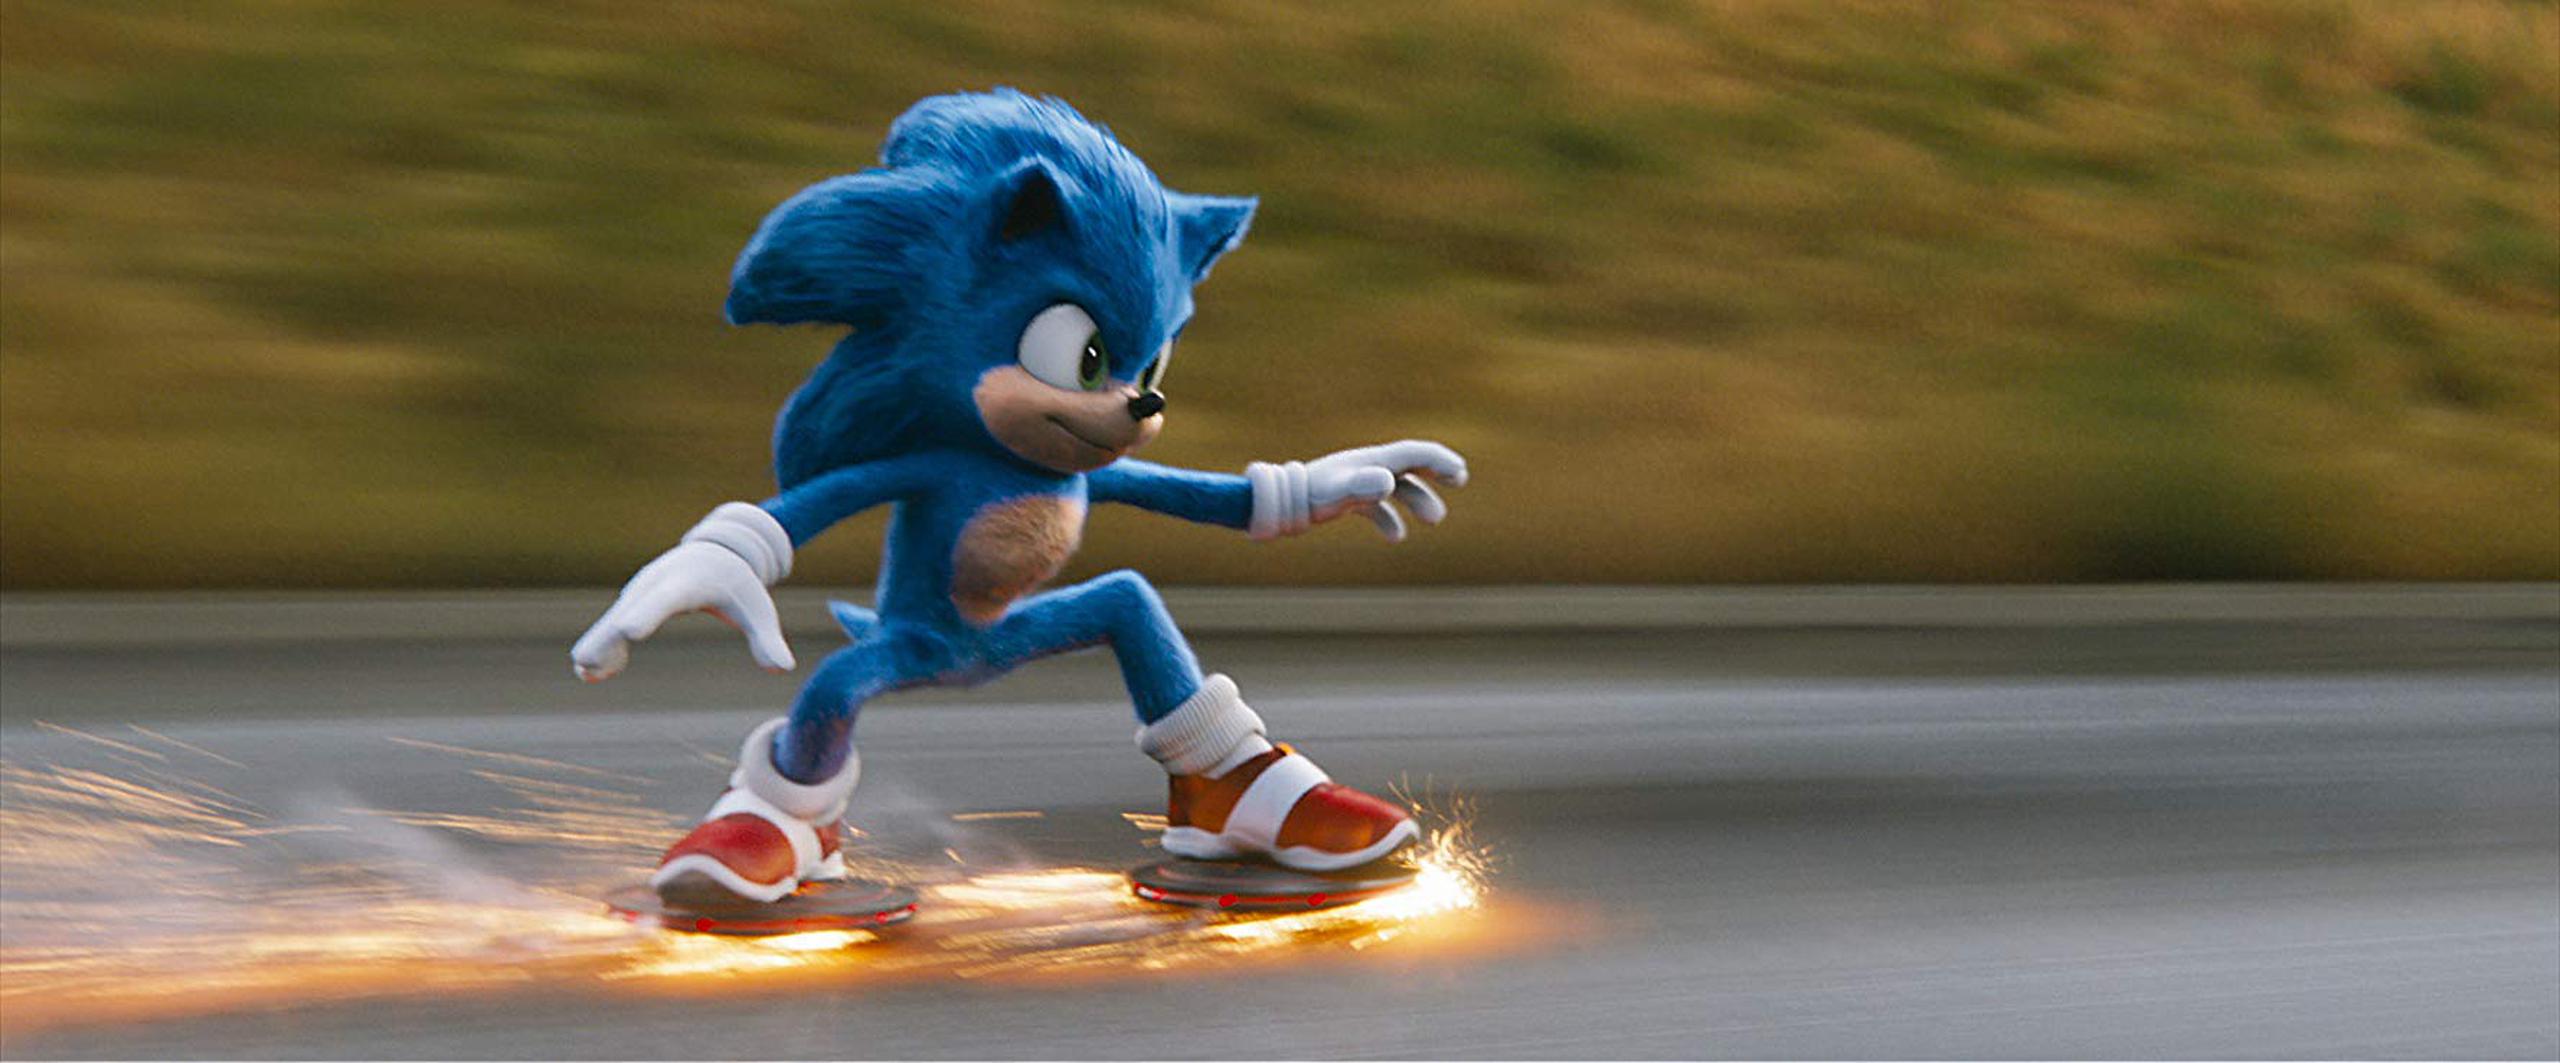 Sonic The Hedgehog, filme con animaciones generadas por computadora basada en el videojuego de Sega.